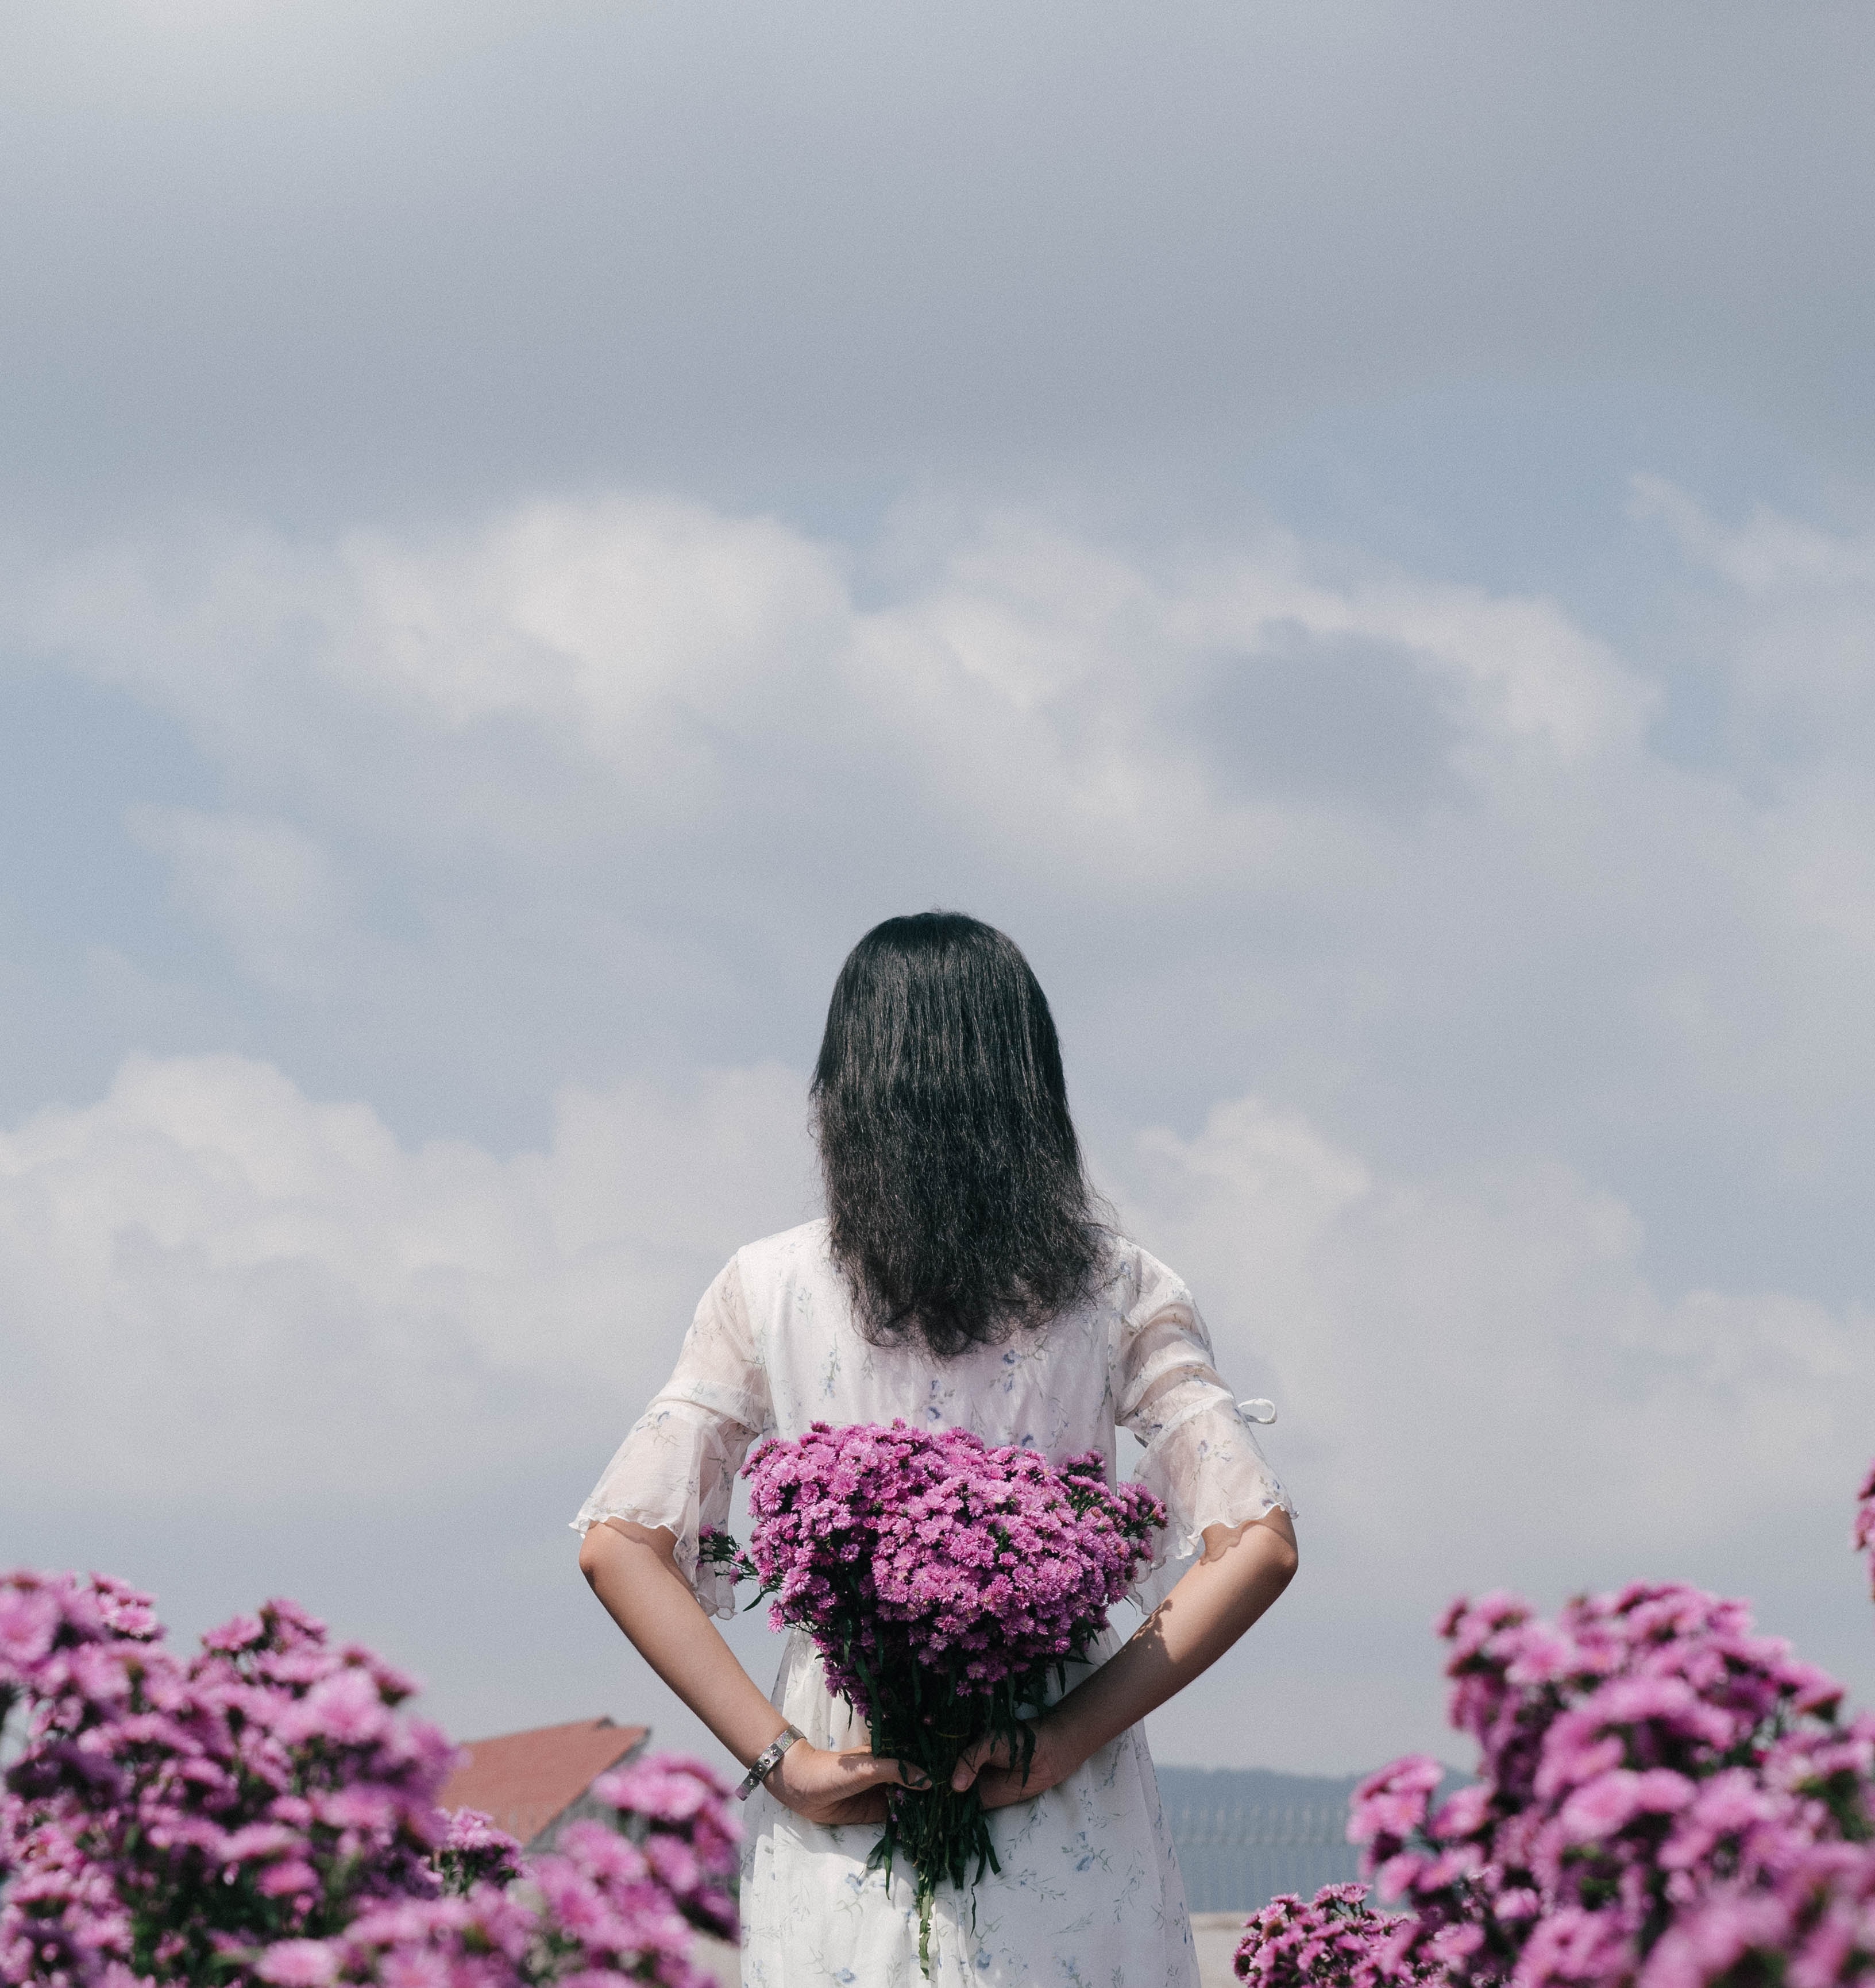 Фото девушки с цветами сзади на спине